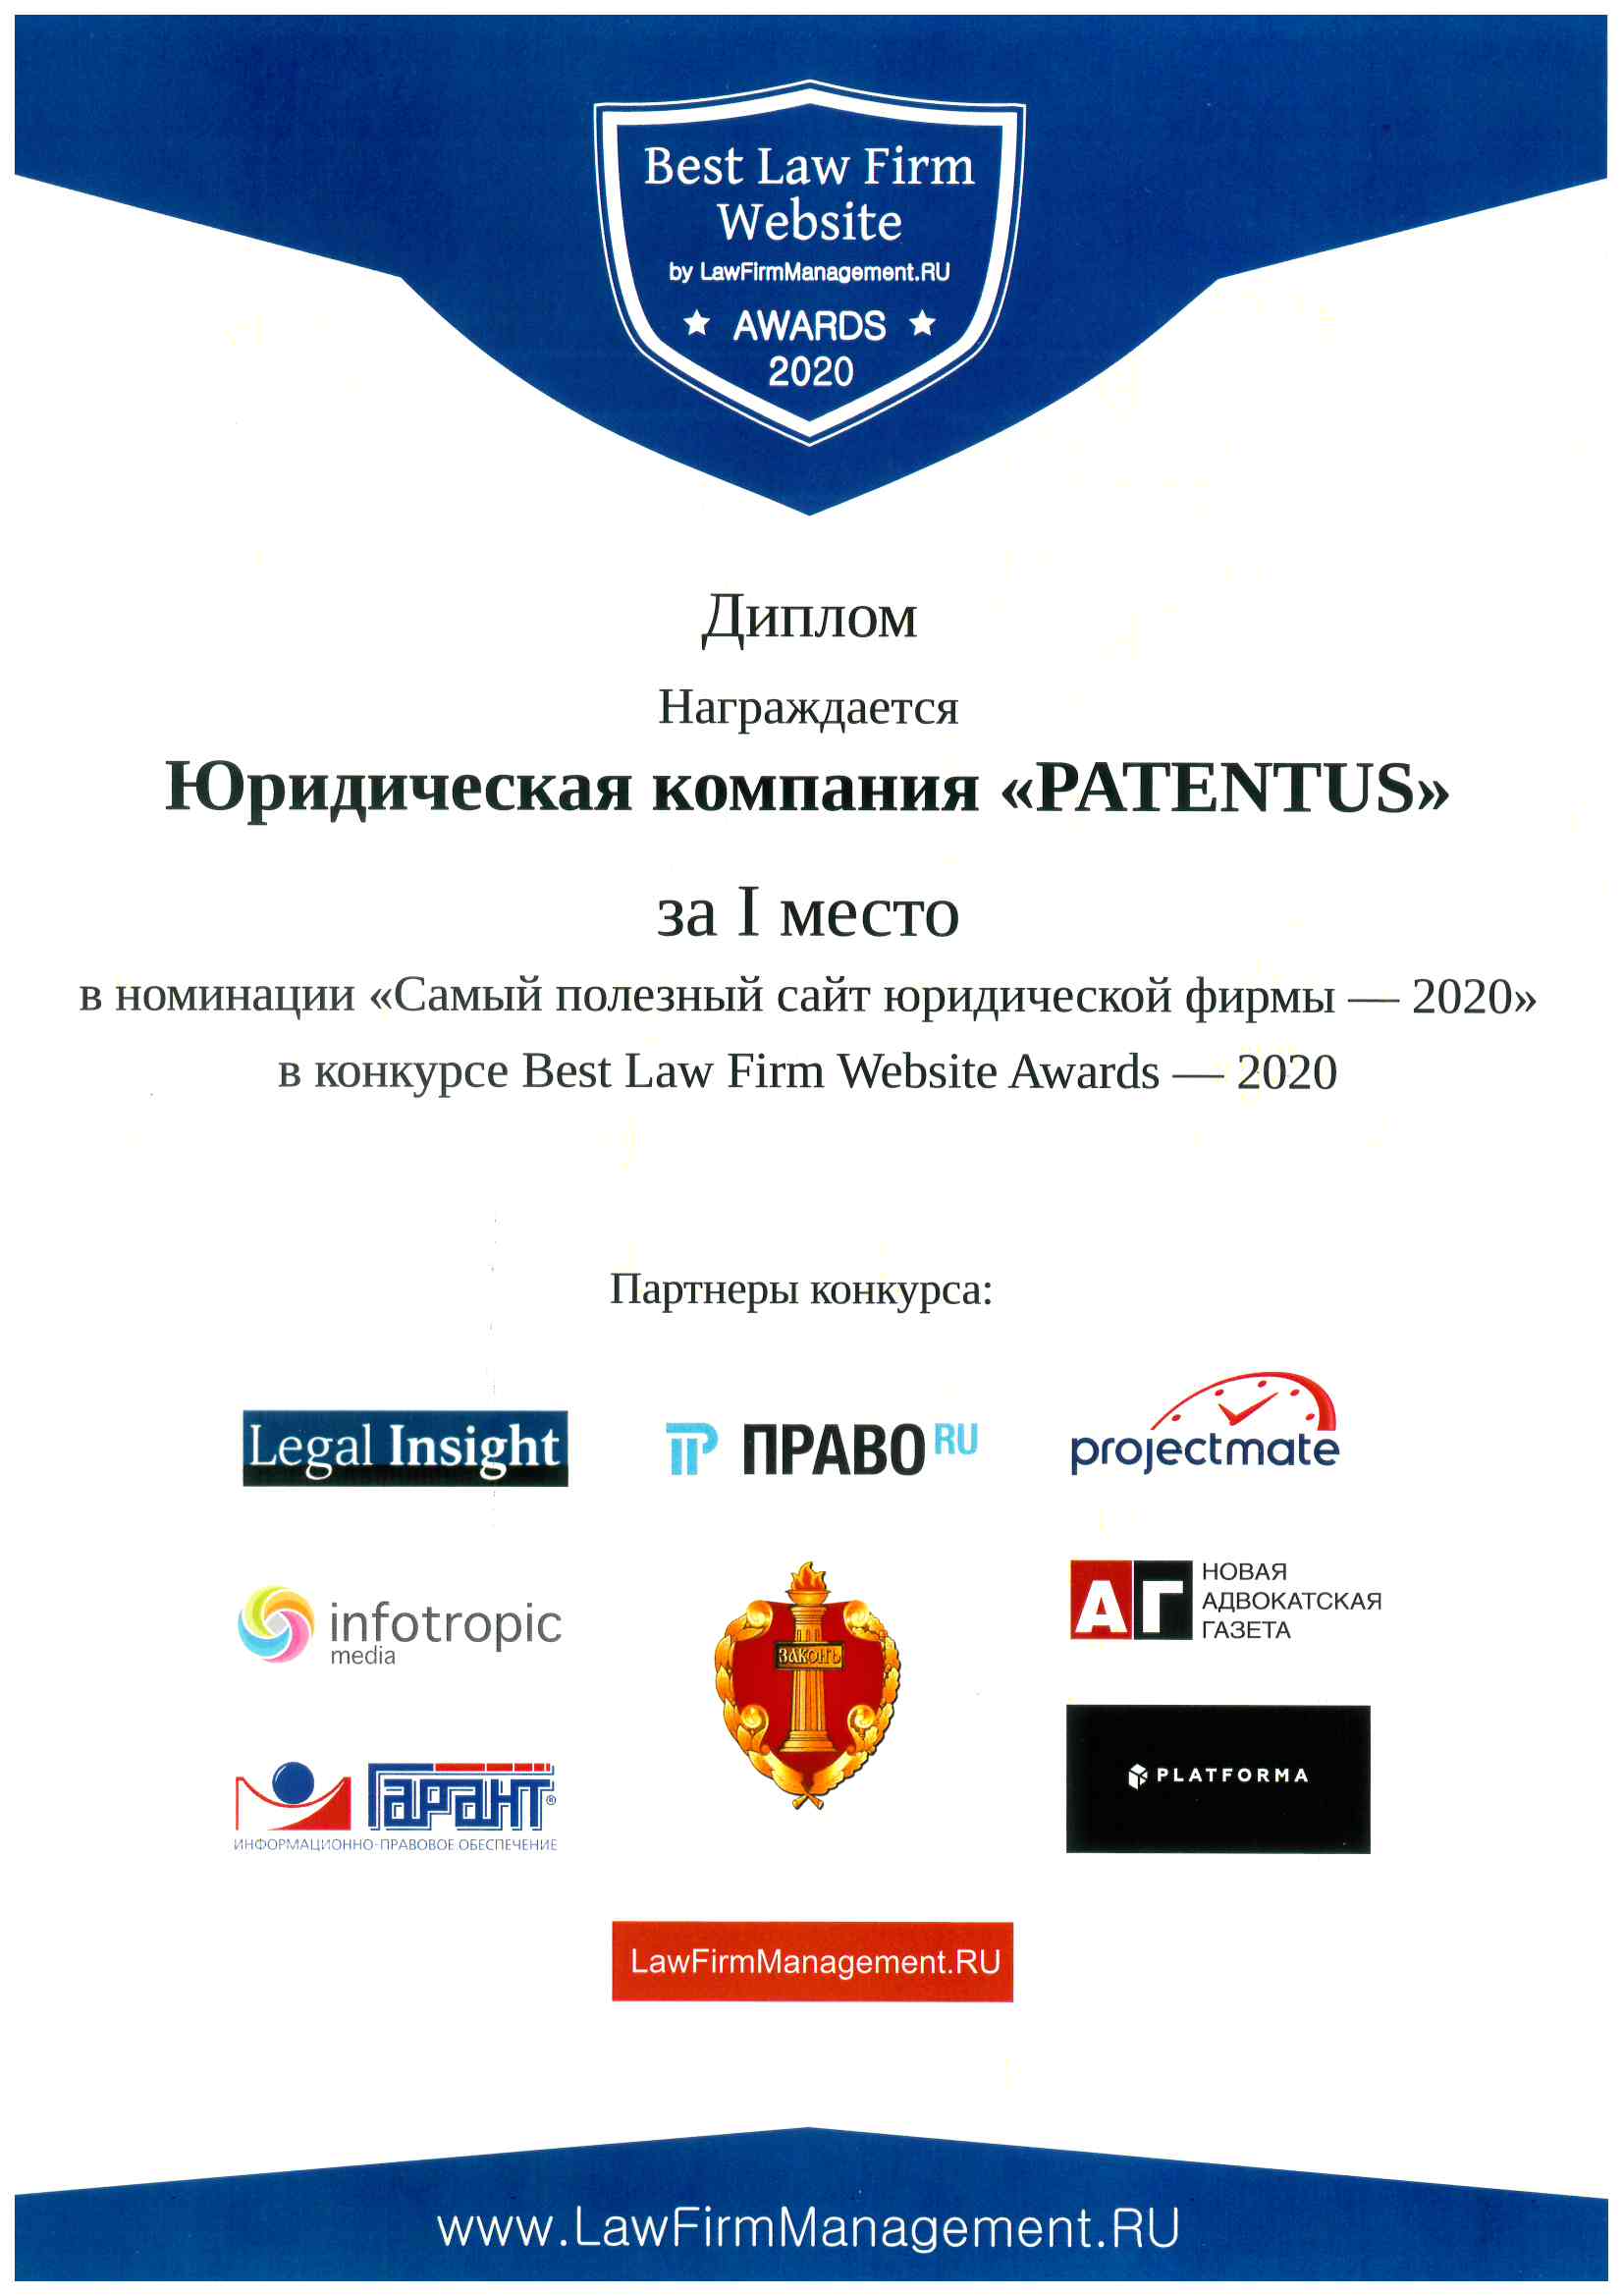 Сайт PATENTUS назван самым полезным и одним из самых эффективных по результатам авторитетного конкурса Best Lawfirm Website 2020